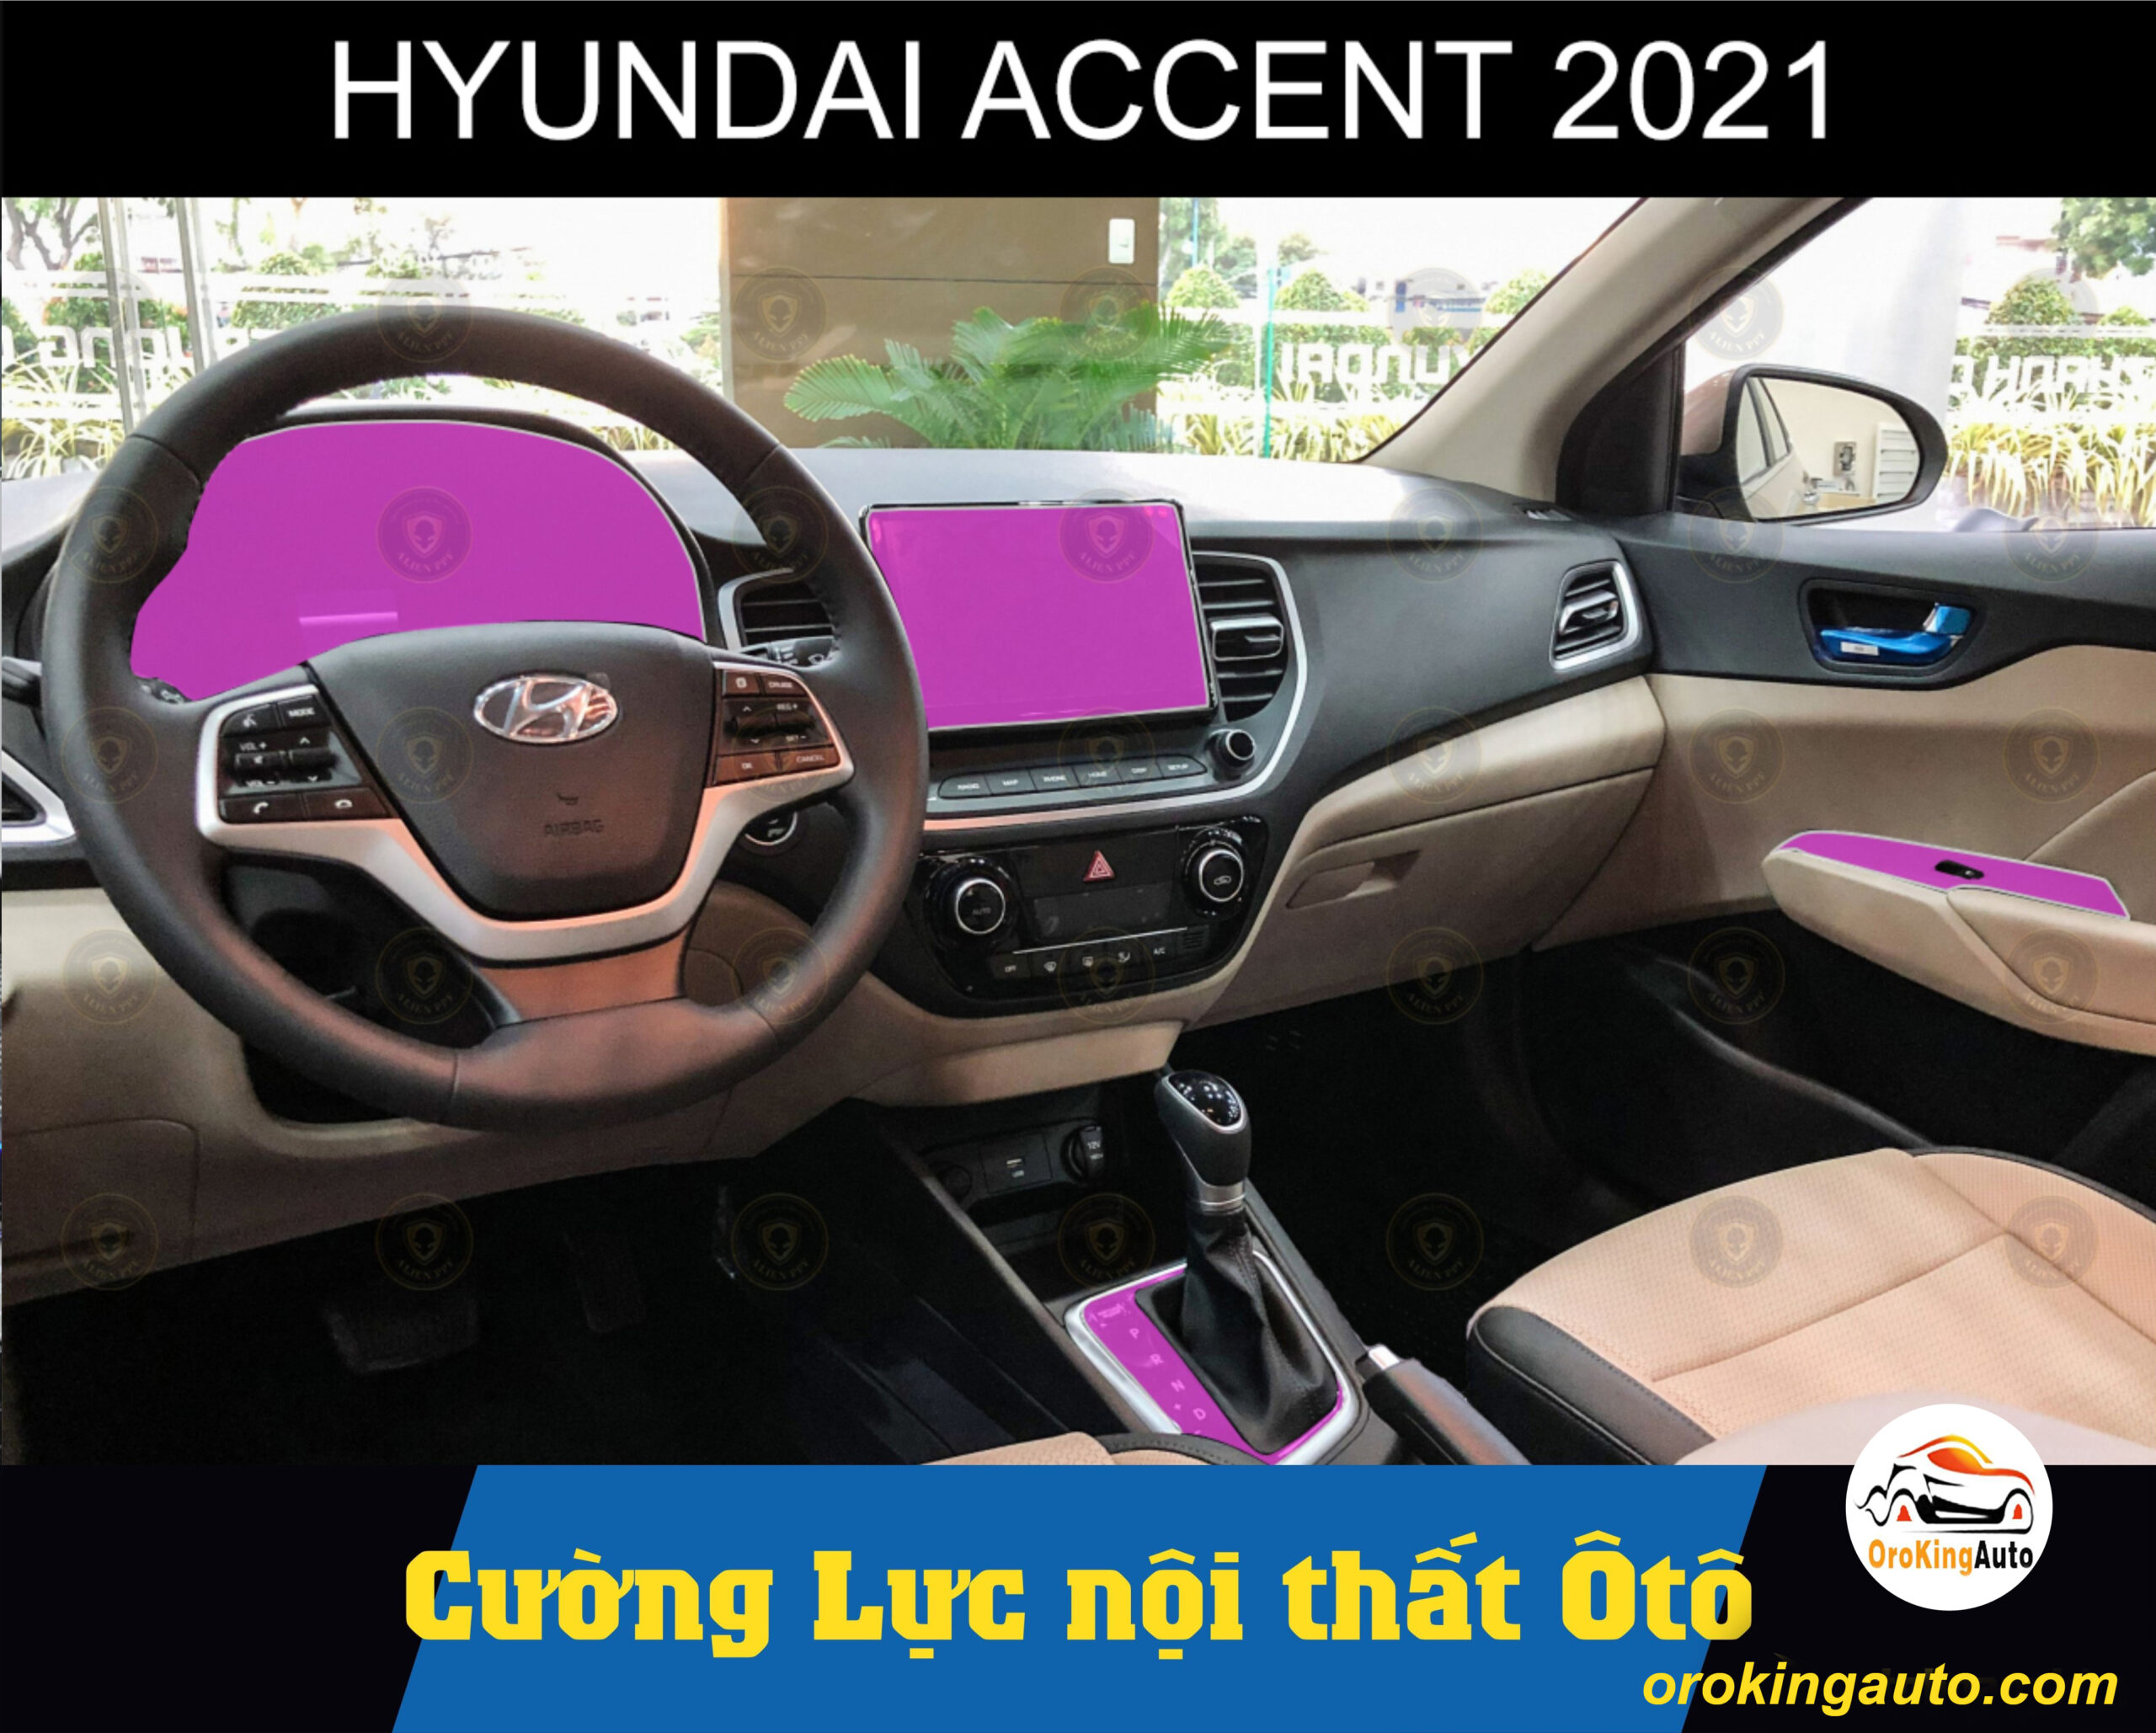 Nội thất Hyundai Accent: Nâng cấp xứng đáng? (Ảnh & Video)